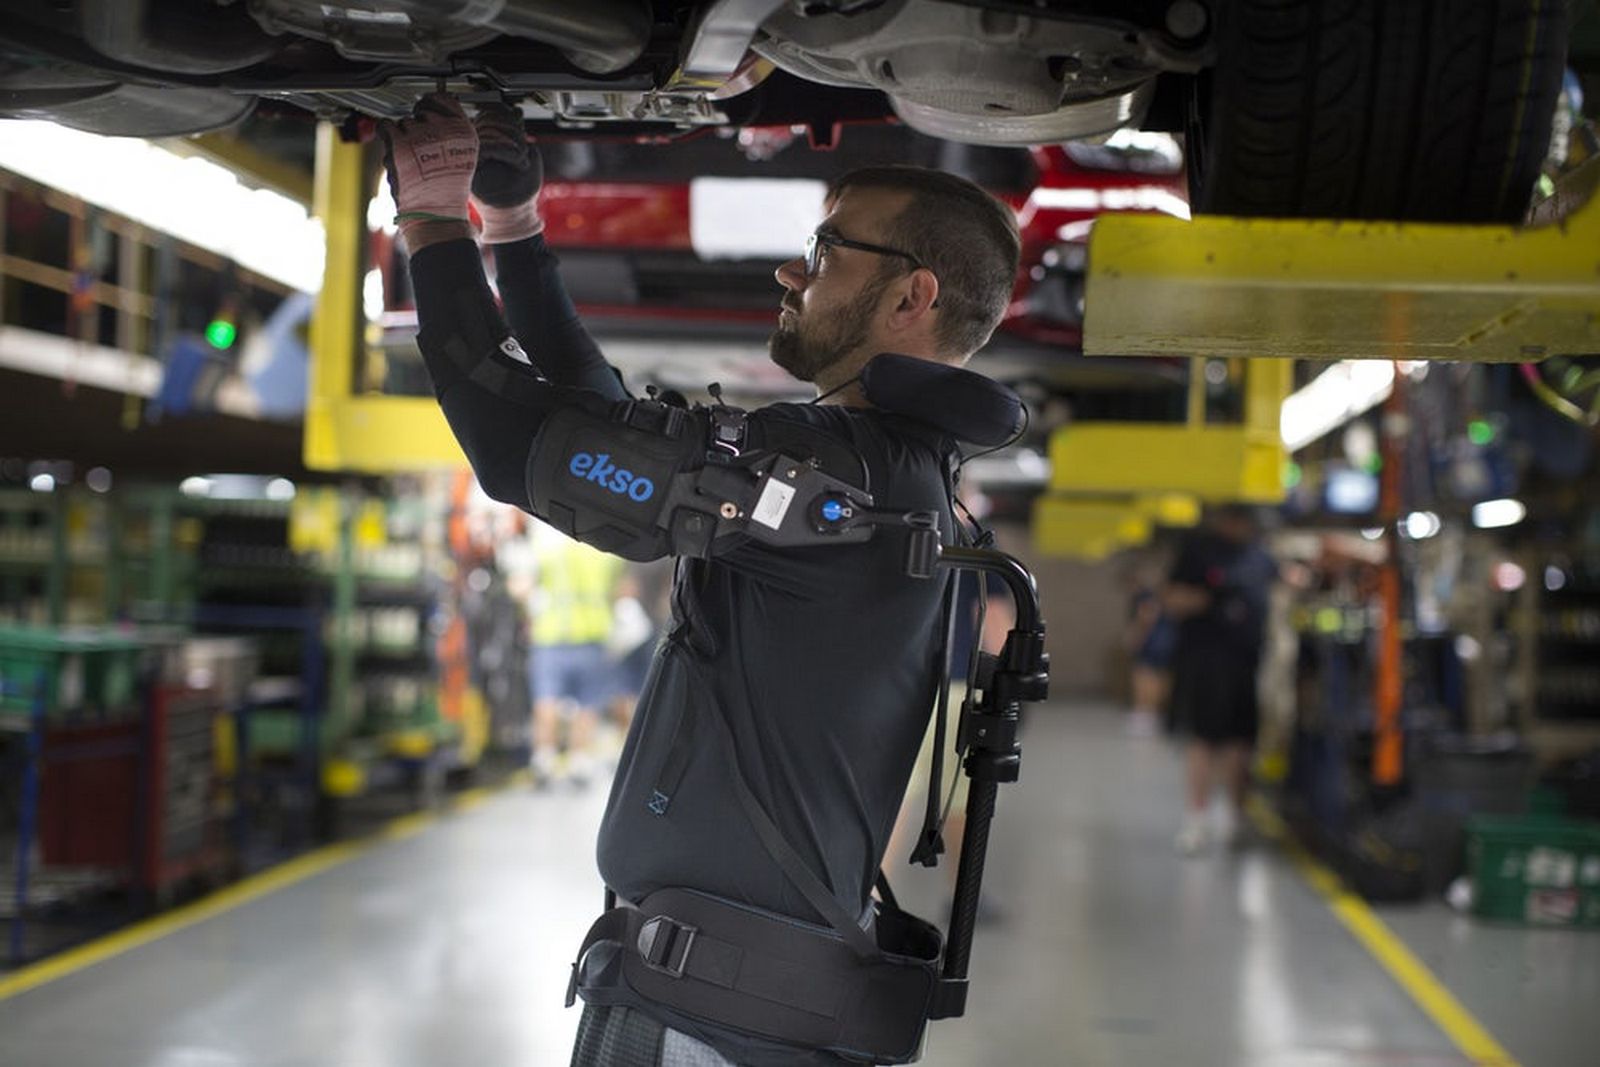 L’exosquelette EksoVest est fourni par Ford à certains de ses ouvriers qui doivent travailler fréquemment avec les bras en l’air. © Ford

